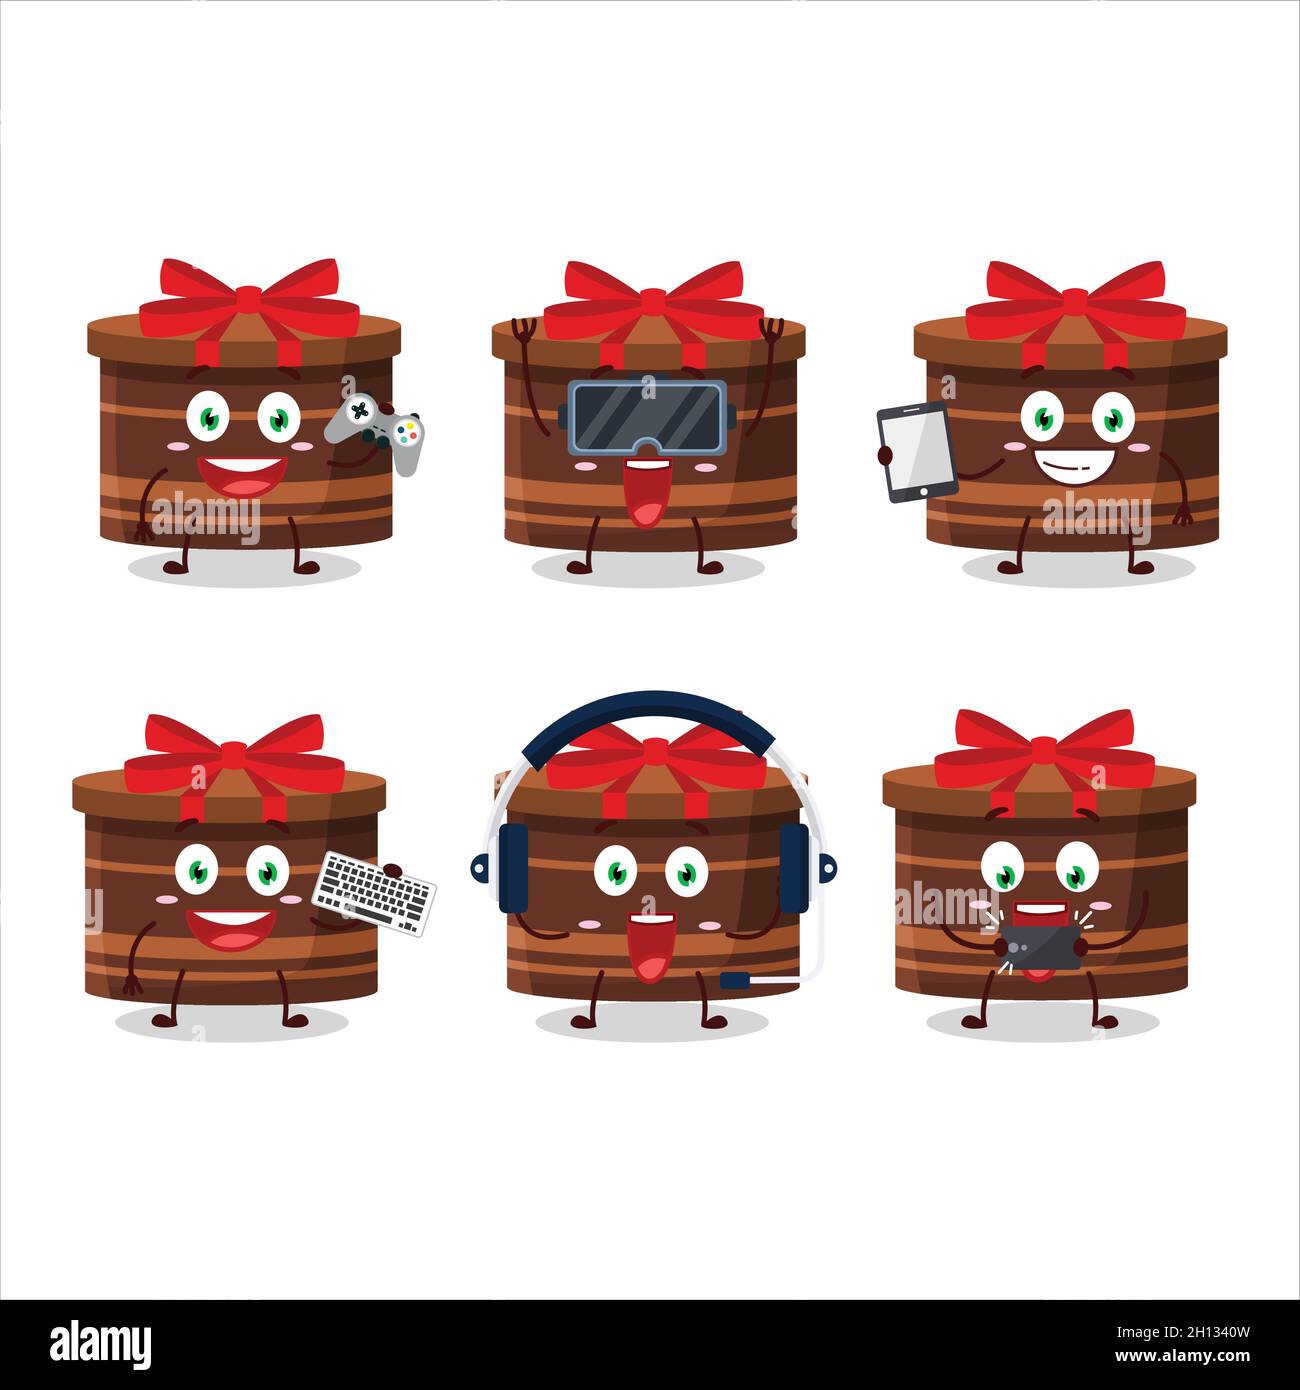 Le personnage de dessin animé de cadeau rond marron joue à des jeux avec diverses émoticônes mignons.Illustration vectorielle Illustration de Vecteur